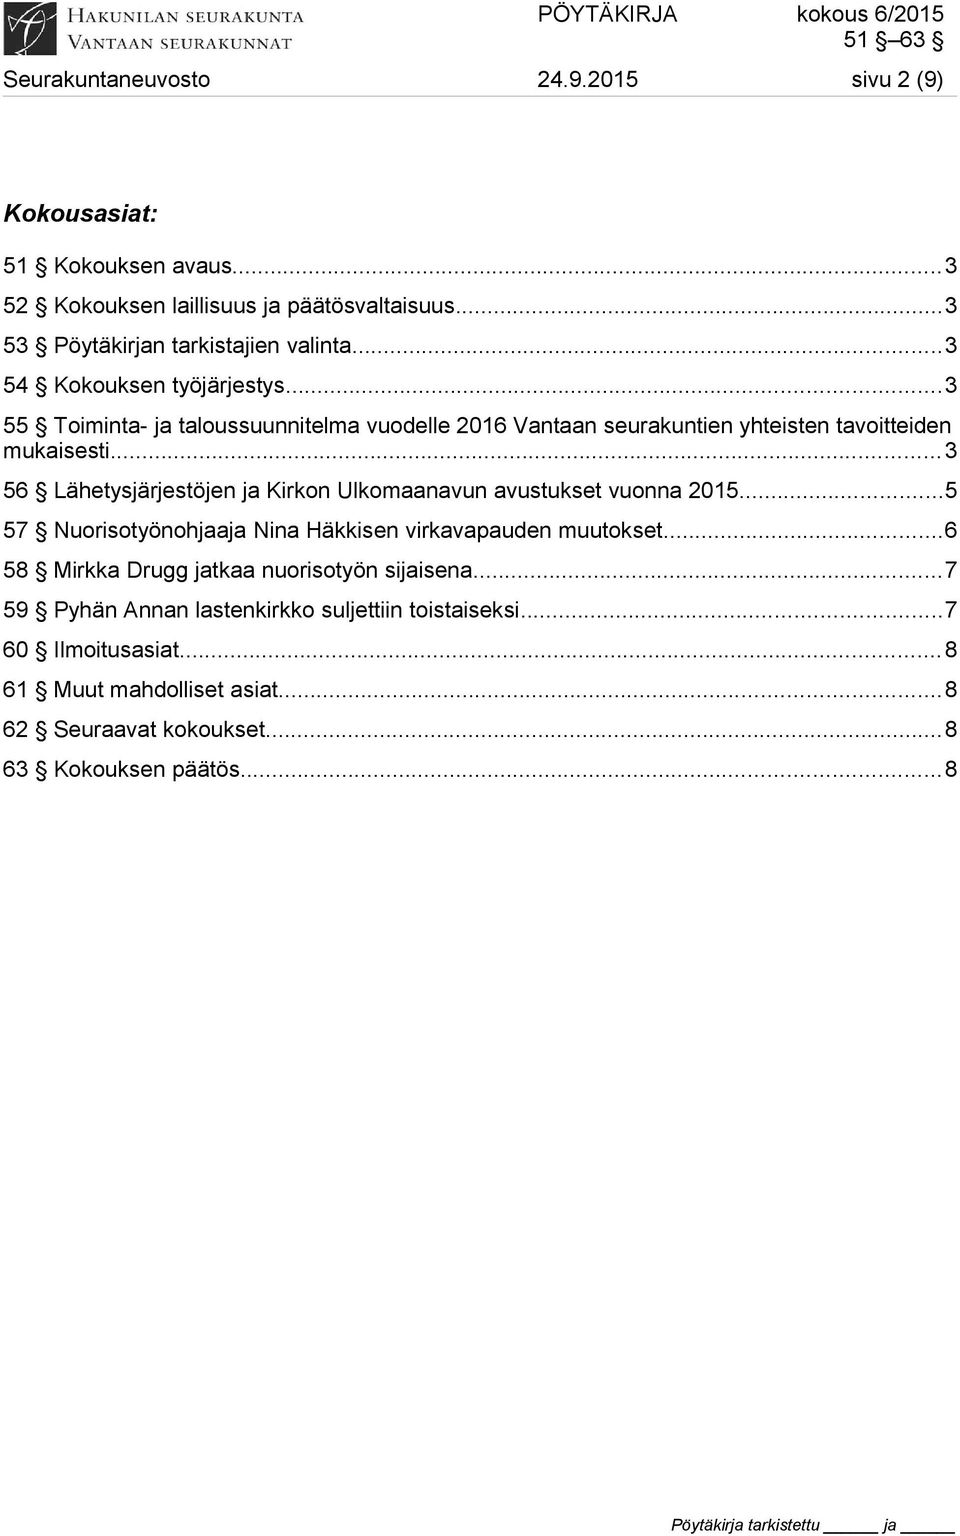 ..3 56 Lähetysjärjestöjen ja Kirkon Ulkomaanavun avustukset vuonna 2015...5 57 Nuorisotyönohjaaja Nina Häkkisen virkavapauden muutokset.